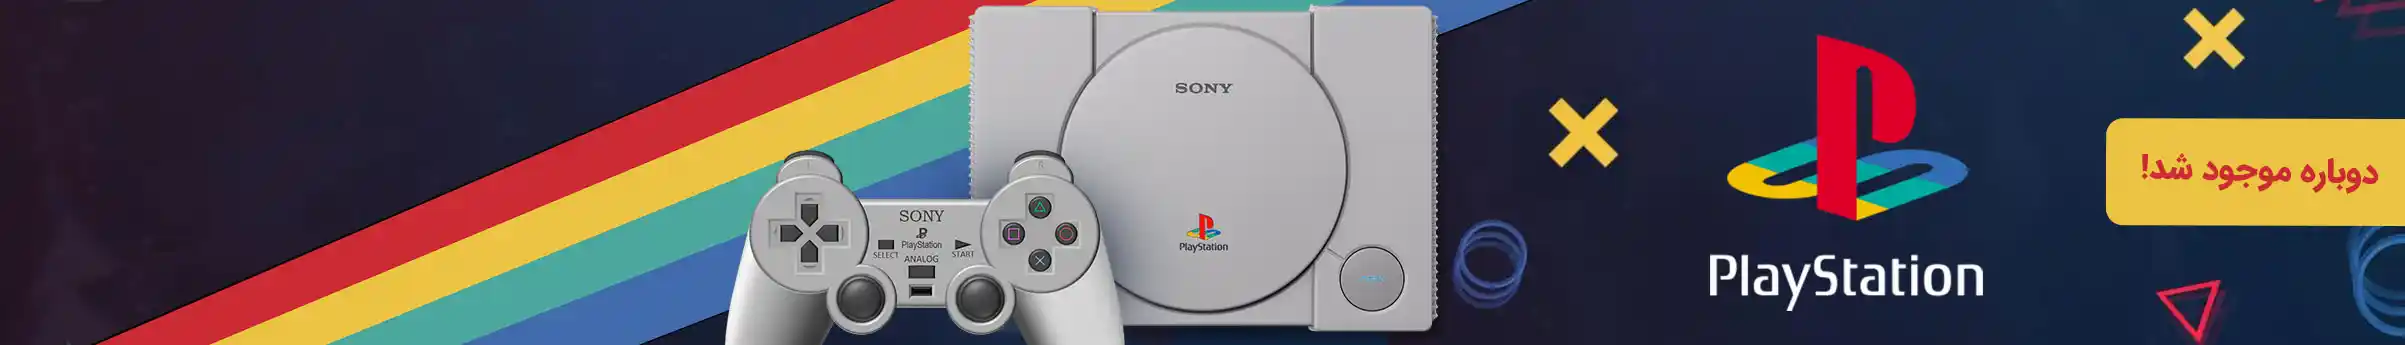 PlayStation1 7.jpg